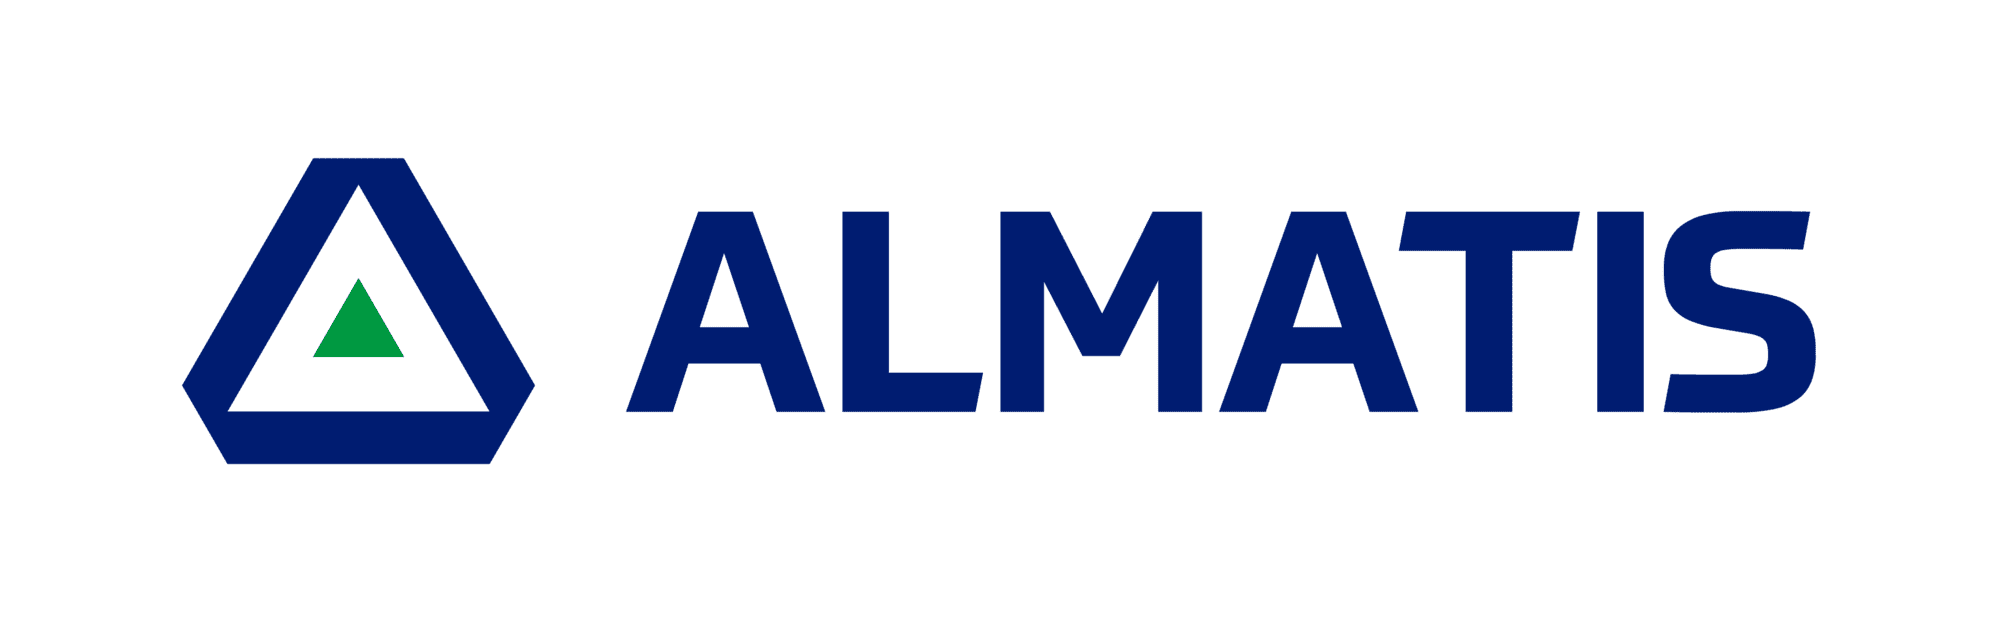 almatis logo_rgb